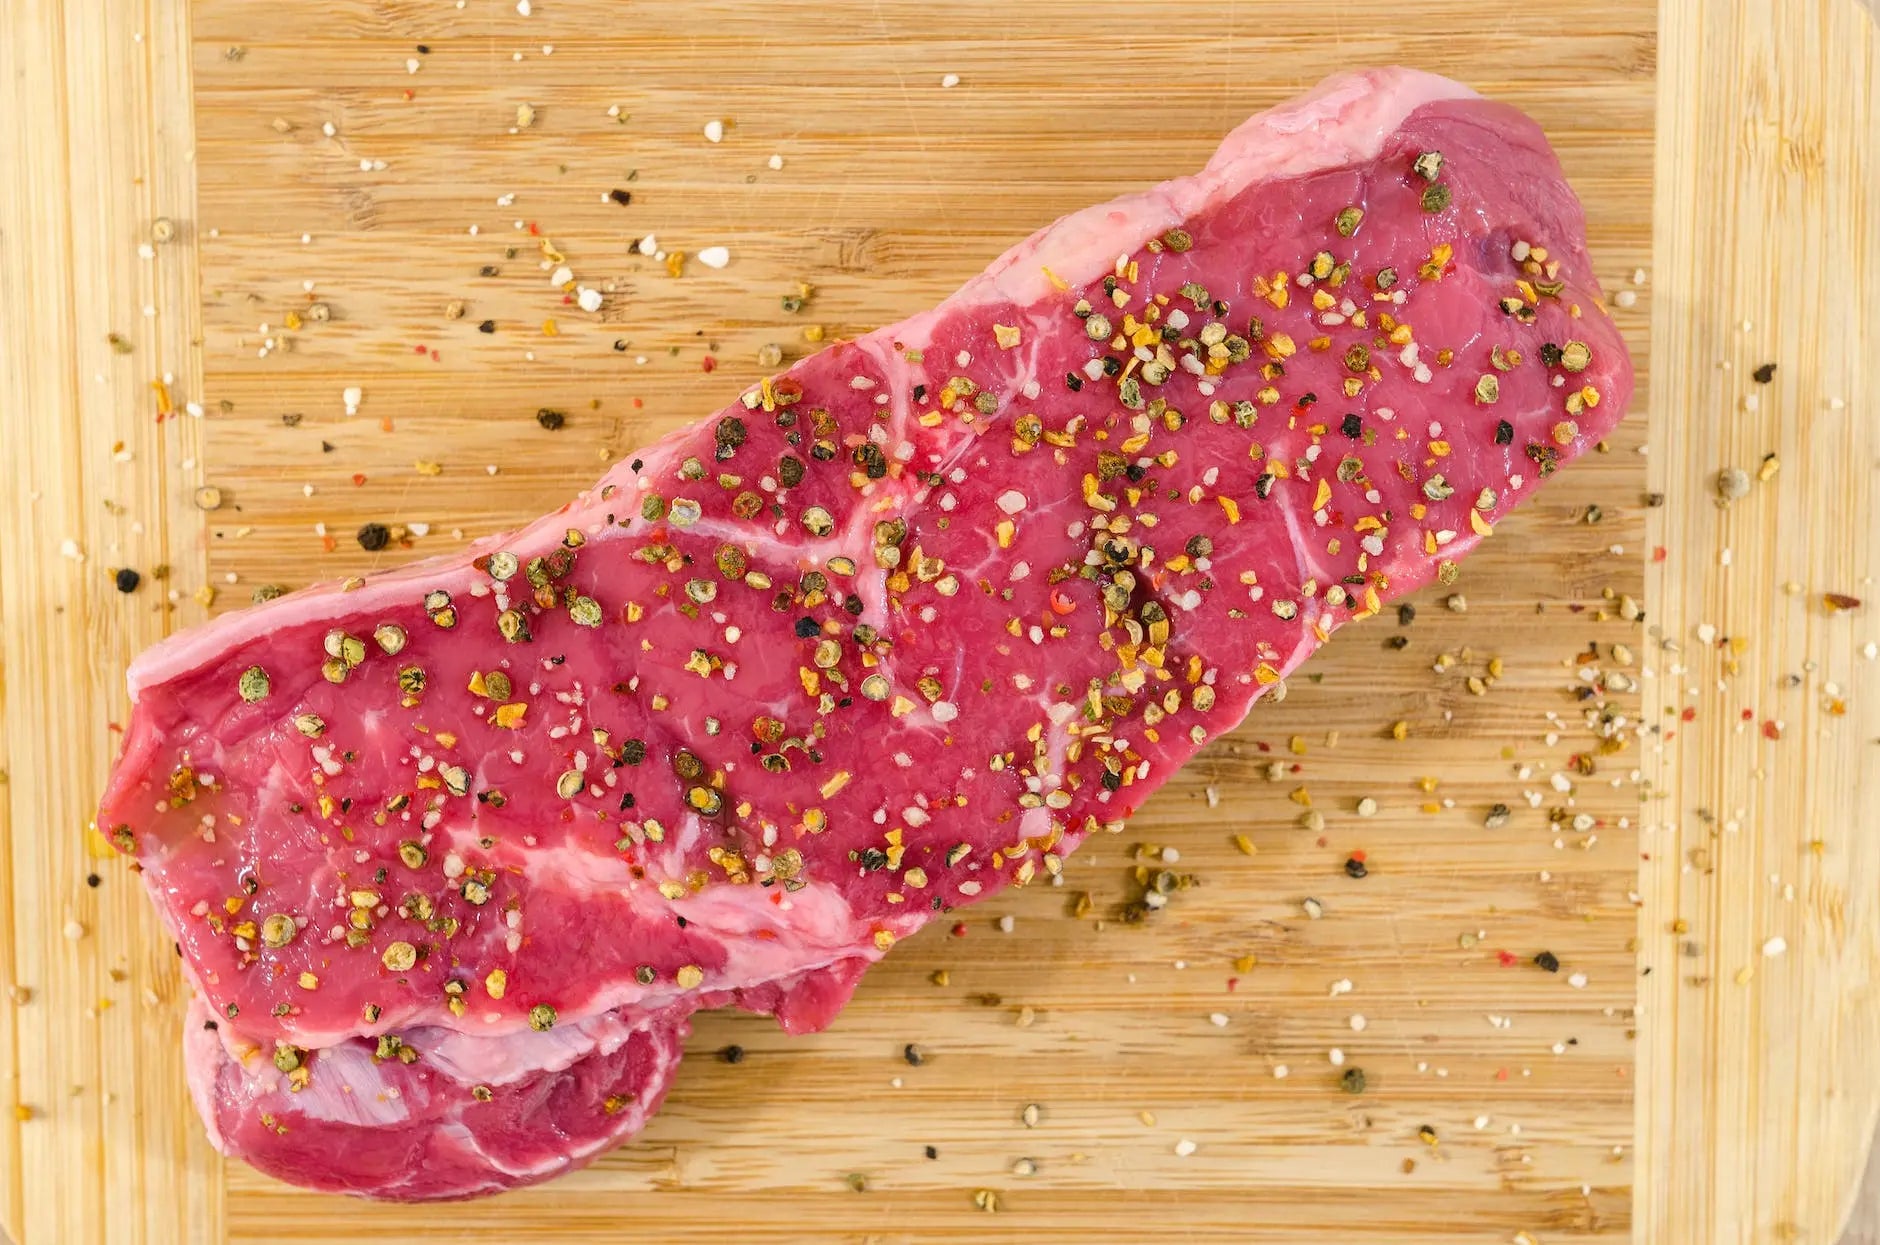 Beef-Storage-Mastery-Maximizing-Freshness-in-Your-Fridge | Fridge.com